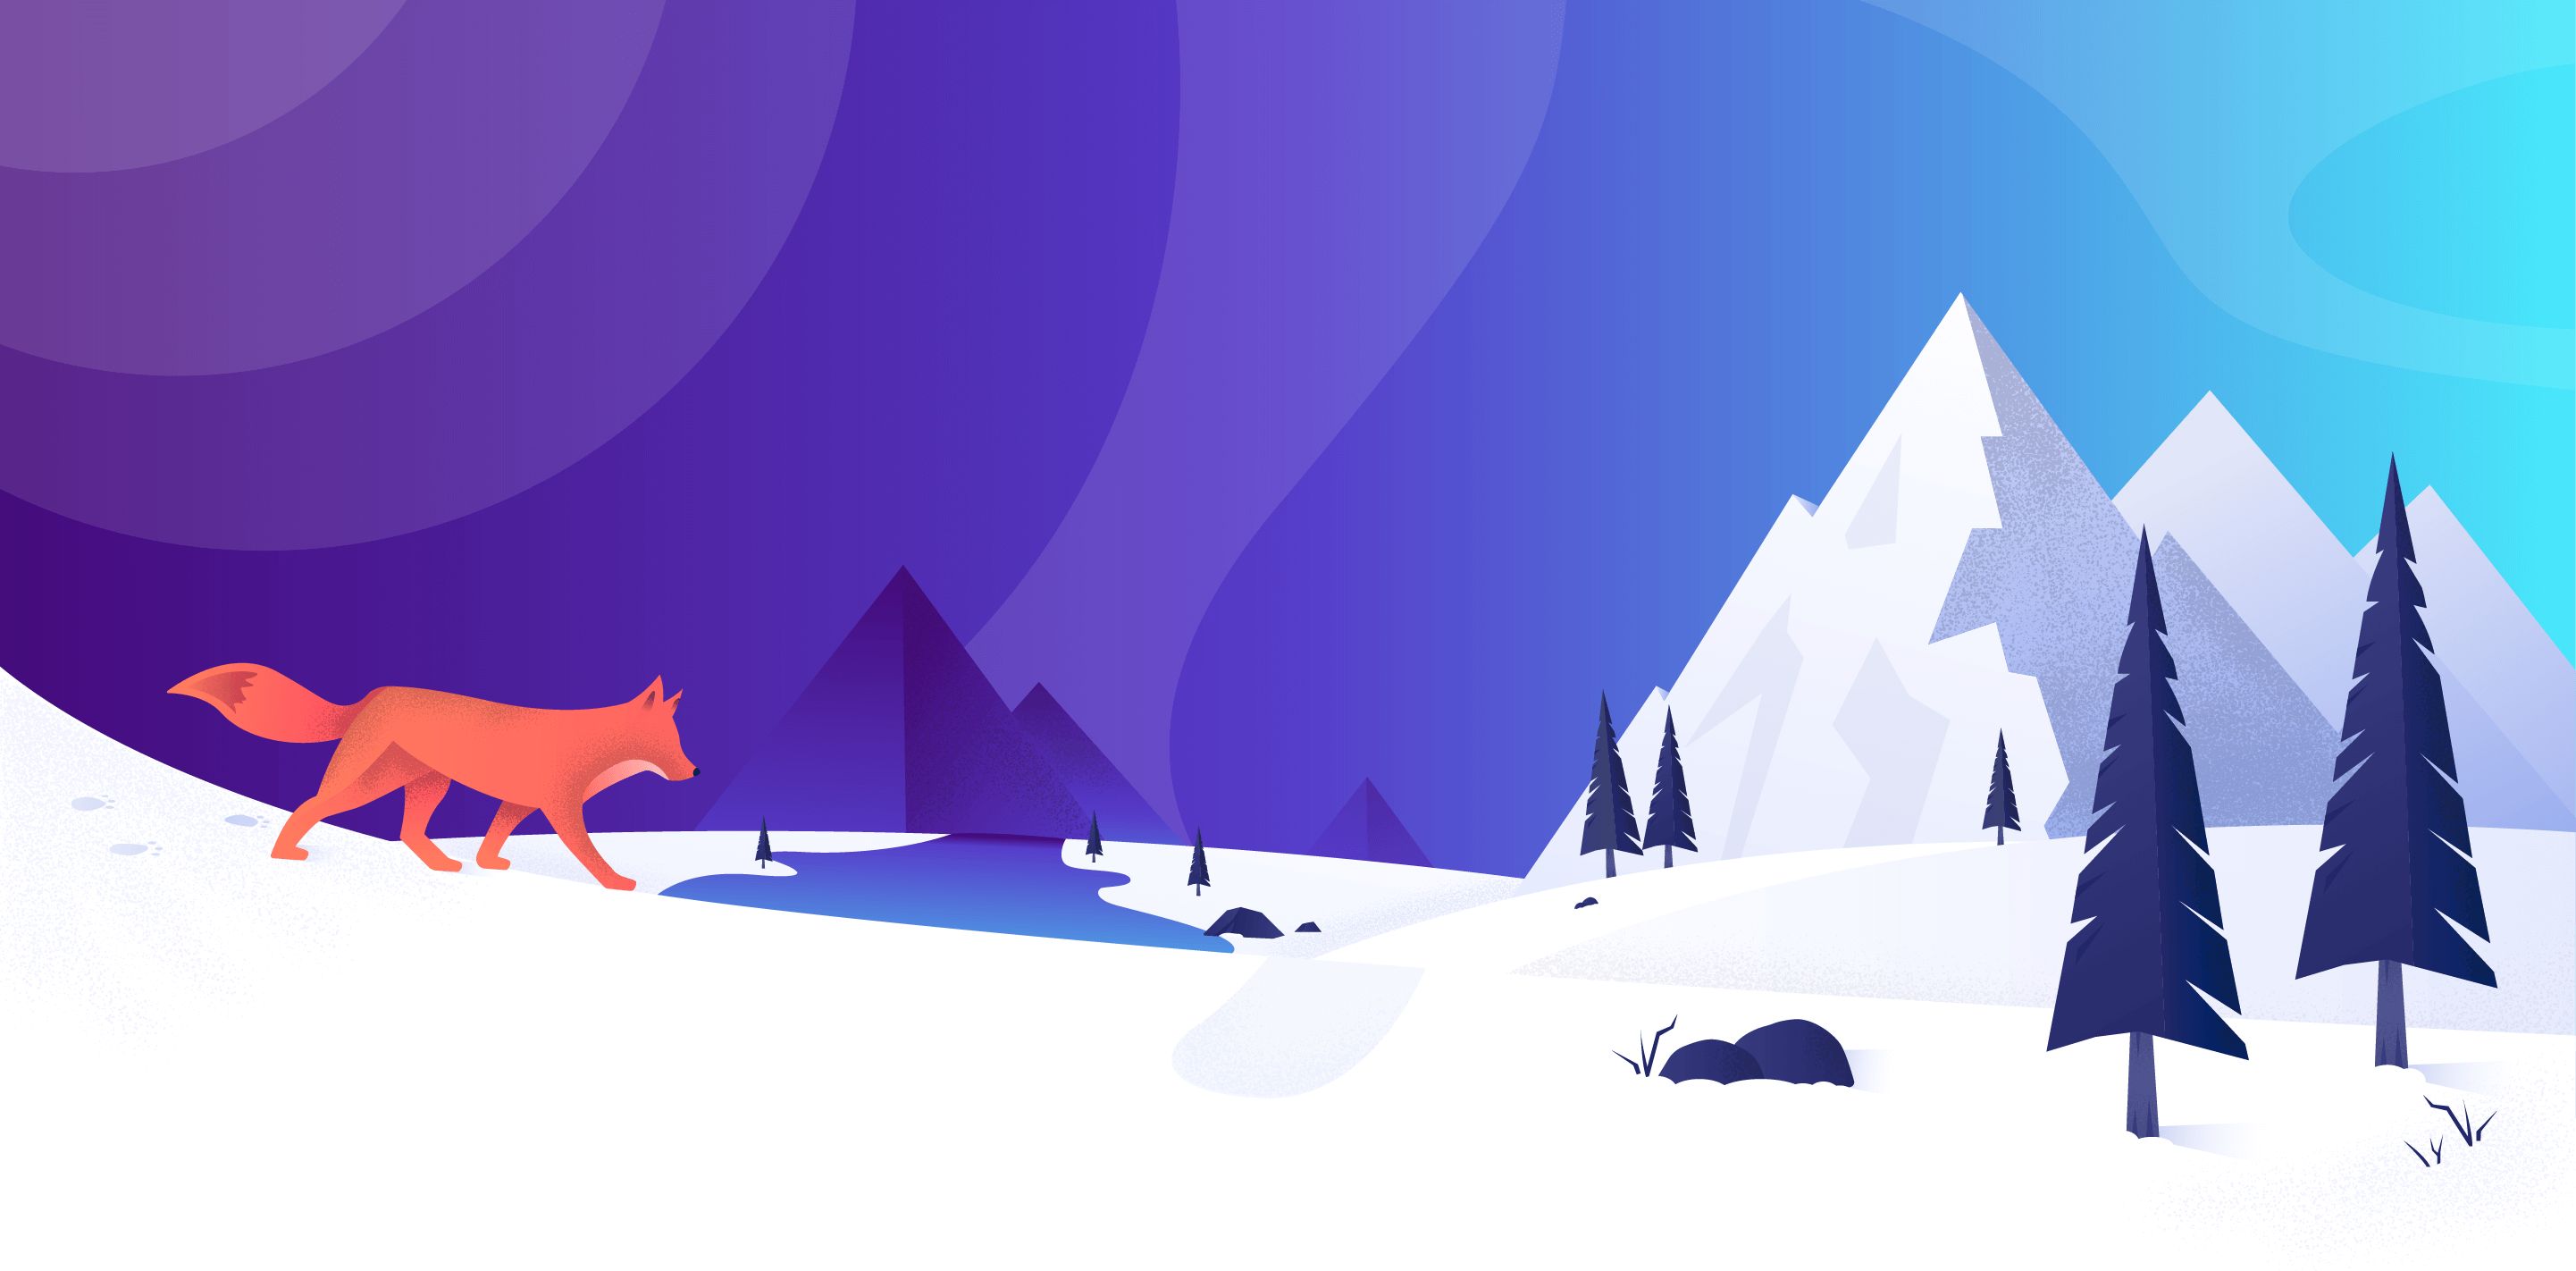 Illustrated fox on a mountain winter scene